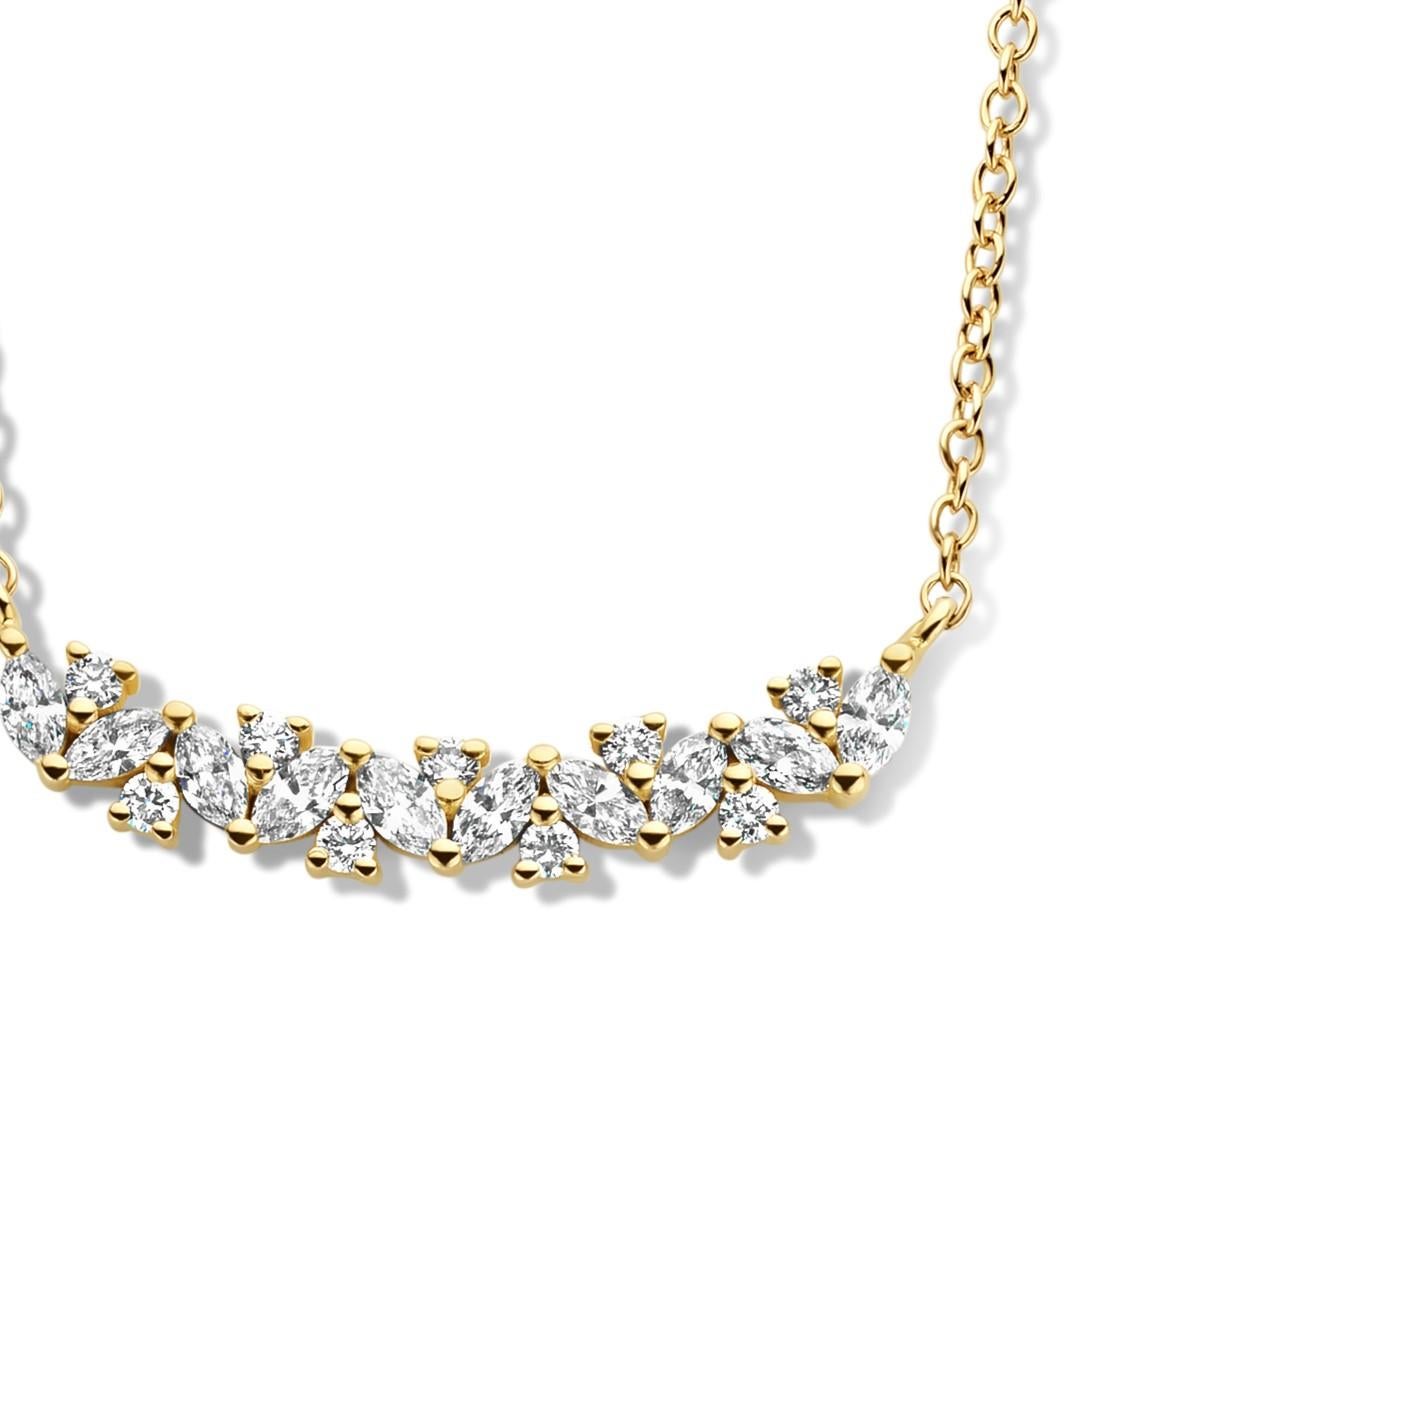 Le collier en or jaune 18 carats a une chaîne rolo et est serti des plus beaux diamants de qualité F/G-VS.  Dans ce collier, vous avez 10 diamants marquise et 9 diamants taille brillant. Également disponible en or blanc 18 carats et en or jaune 18